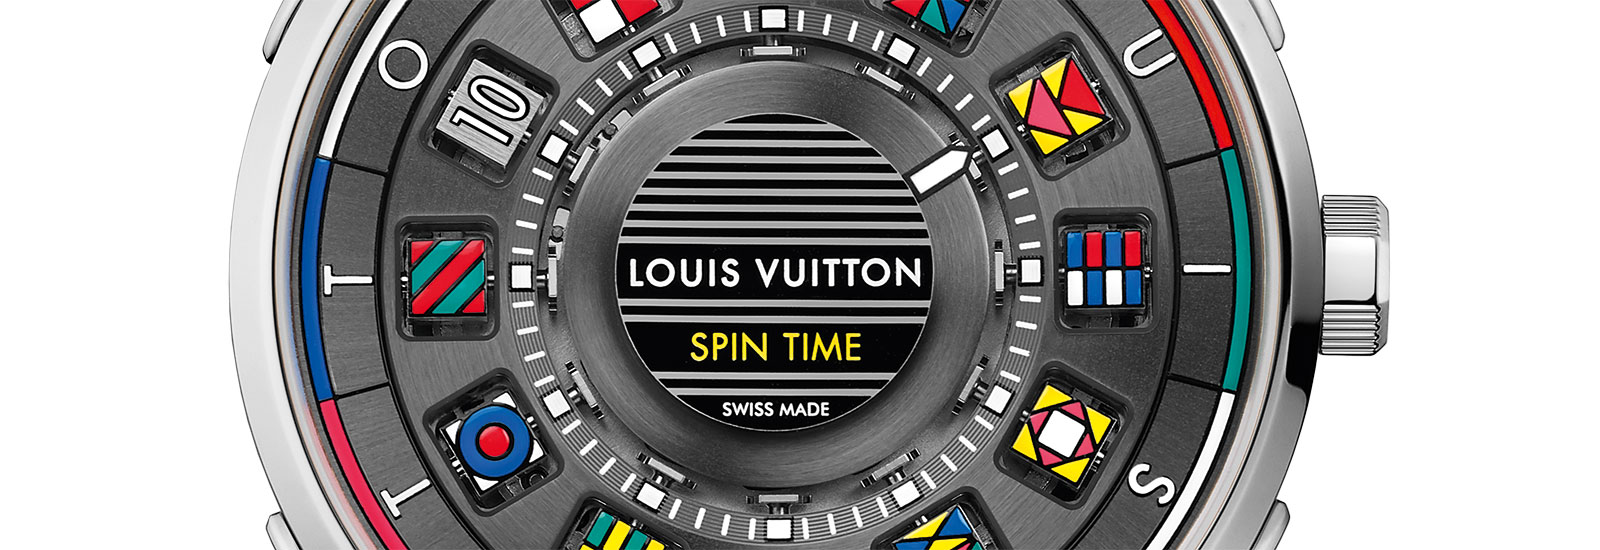 Louis Vuitton Escale Spin Time 2